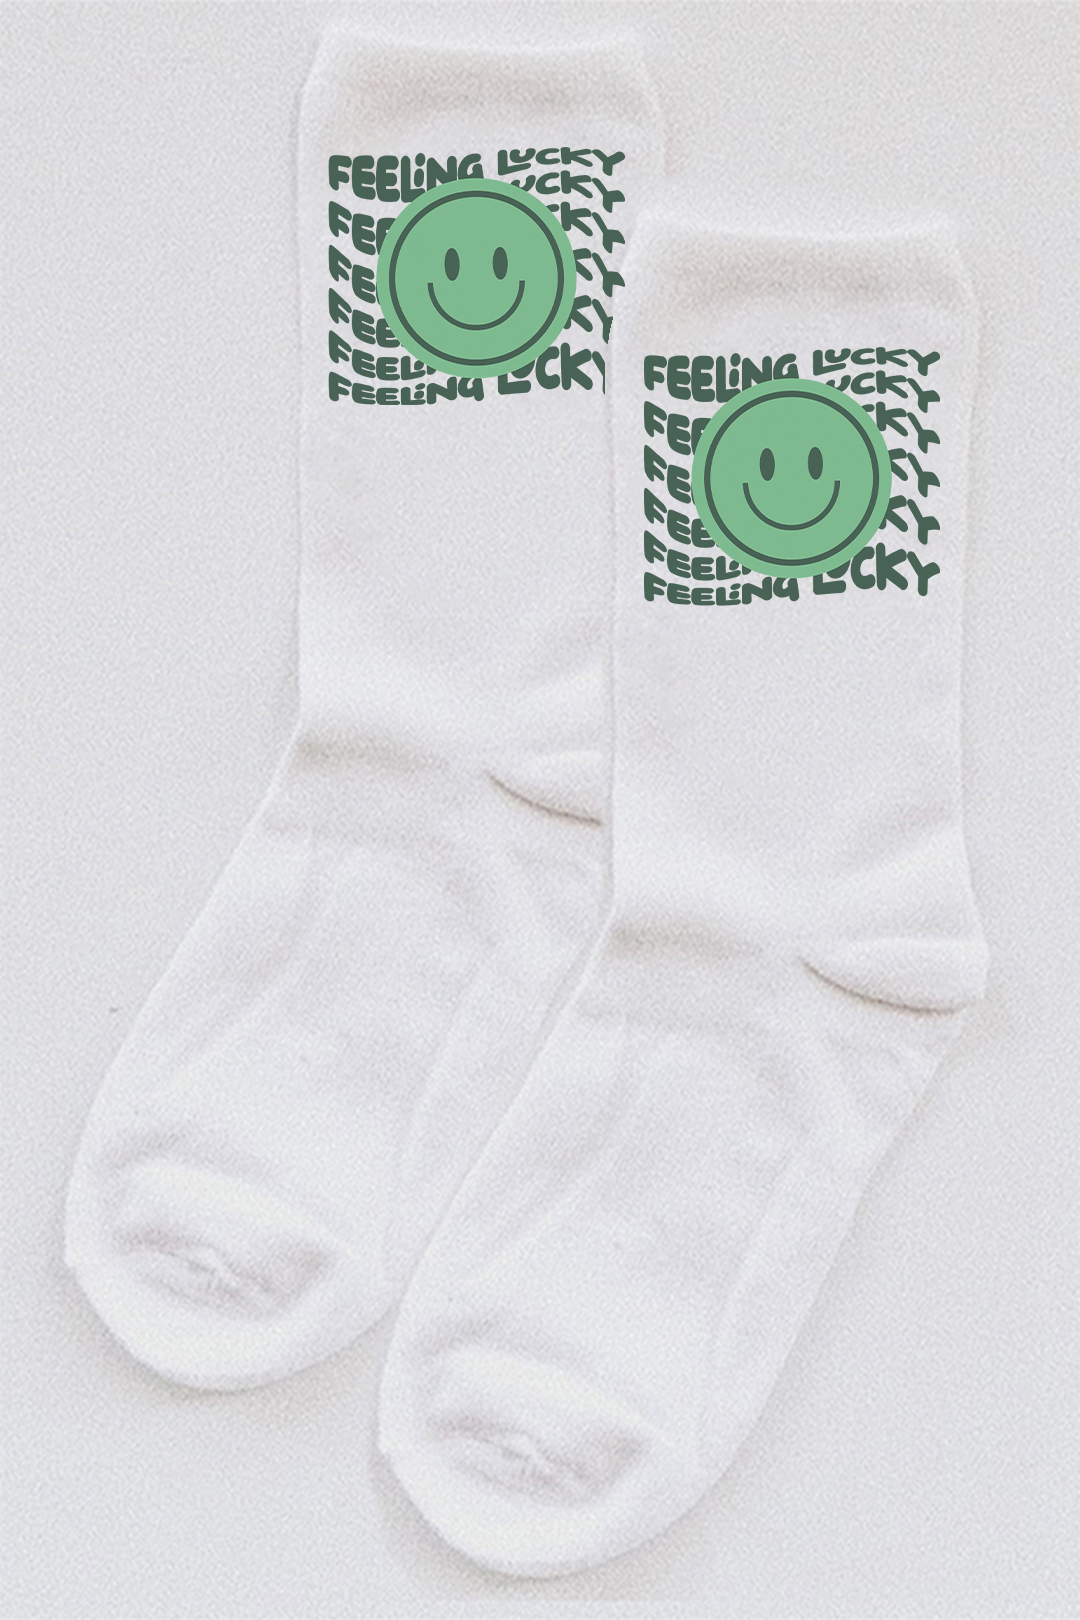 Feeling Lucky Smiley socks